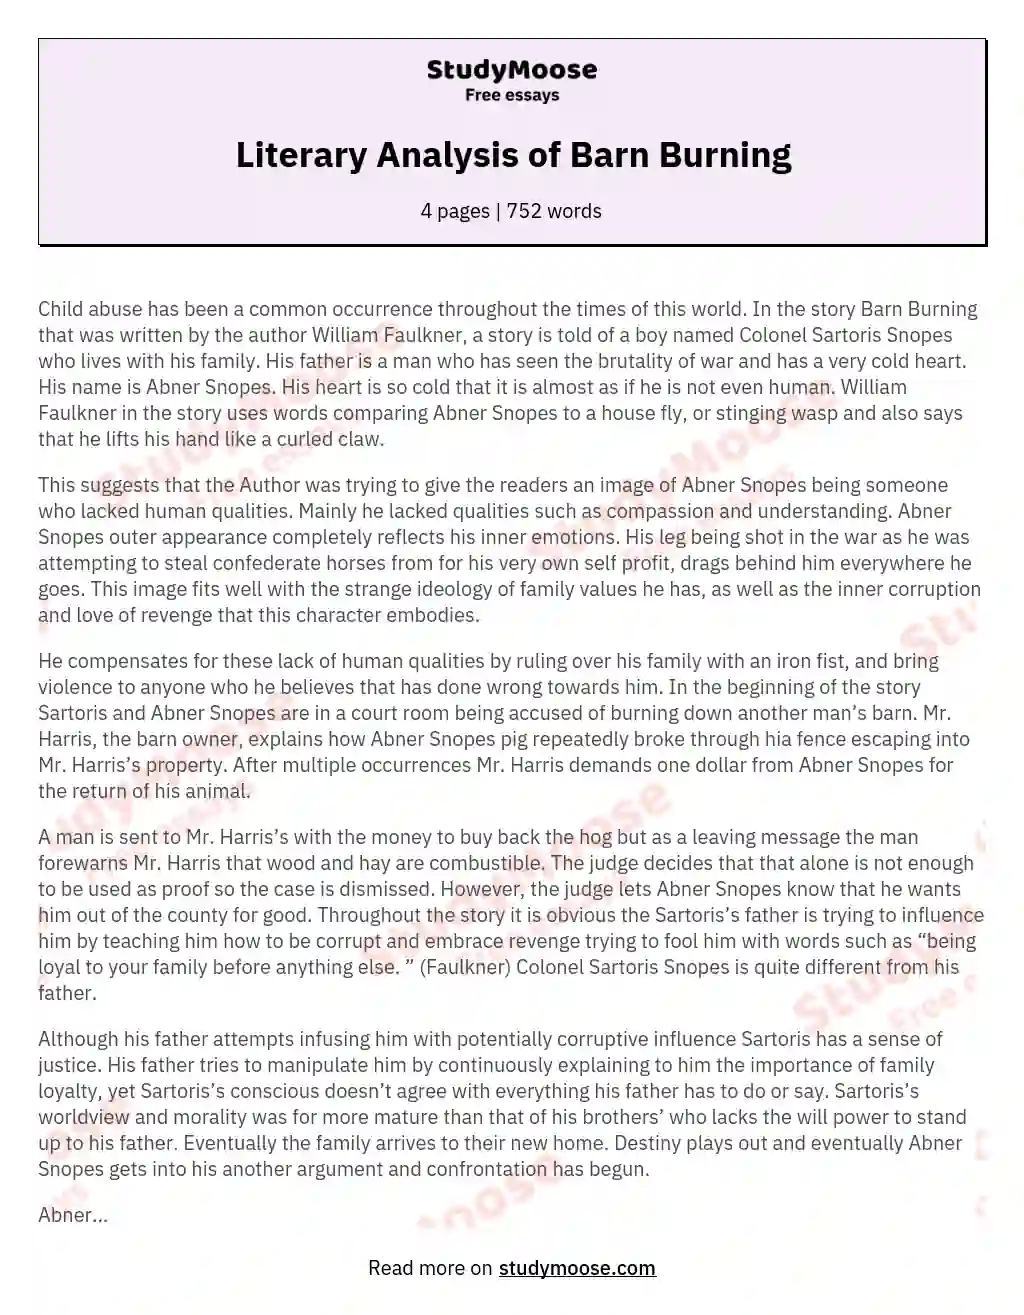 Literary Analysis of Barn Burning